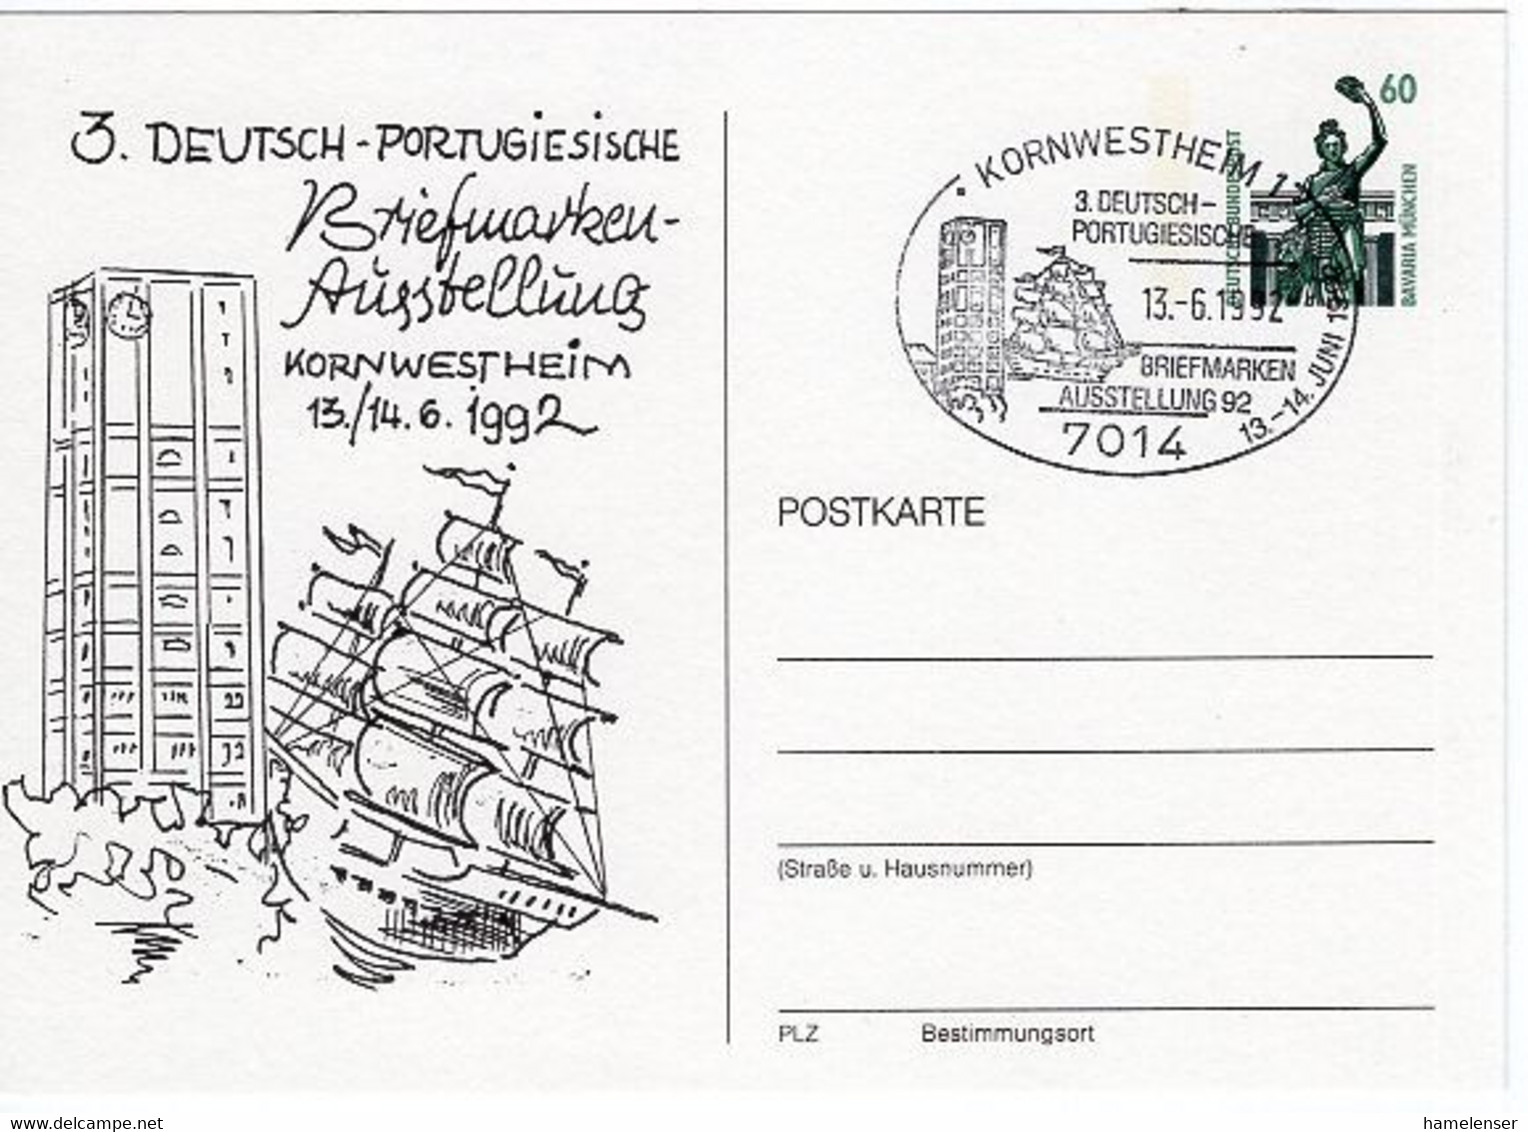 51517 - Bund - 1992 - 60Pfg. SWK PGAKte "3.Deutsch-Portugiesische Briefmarkenausstellung" M SoStpl KORNWESTHEIM - ... - Ships